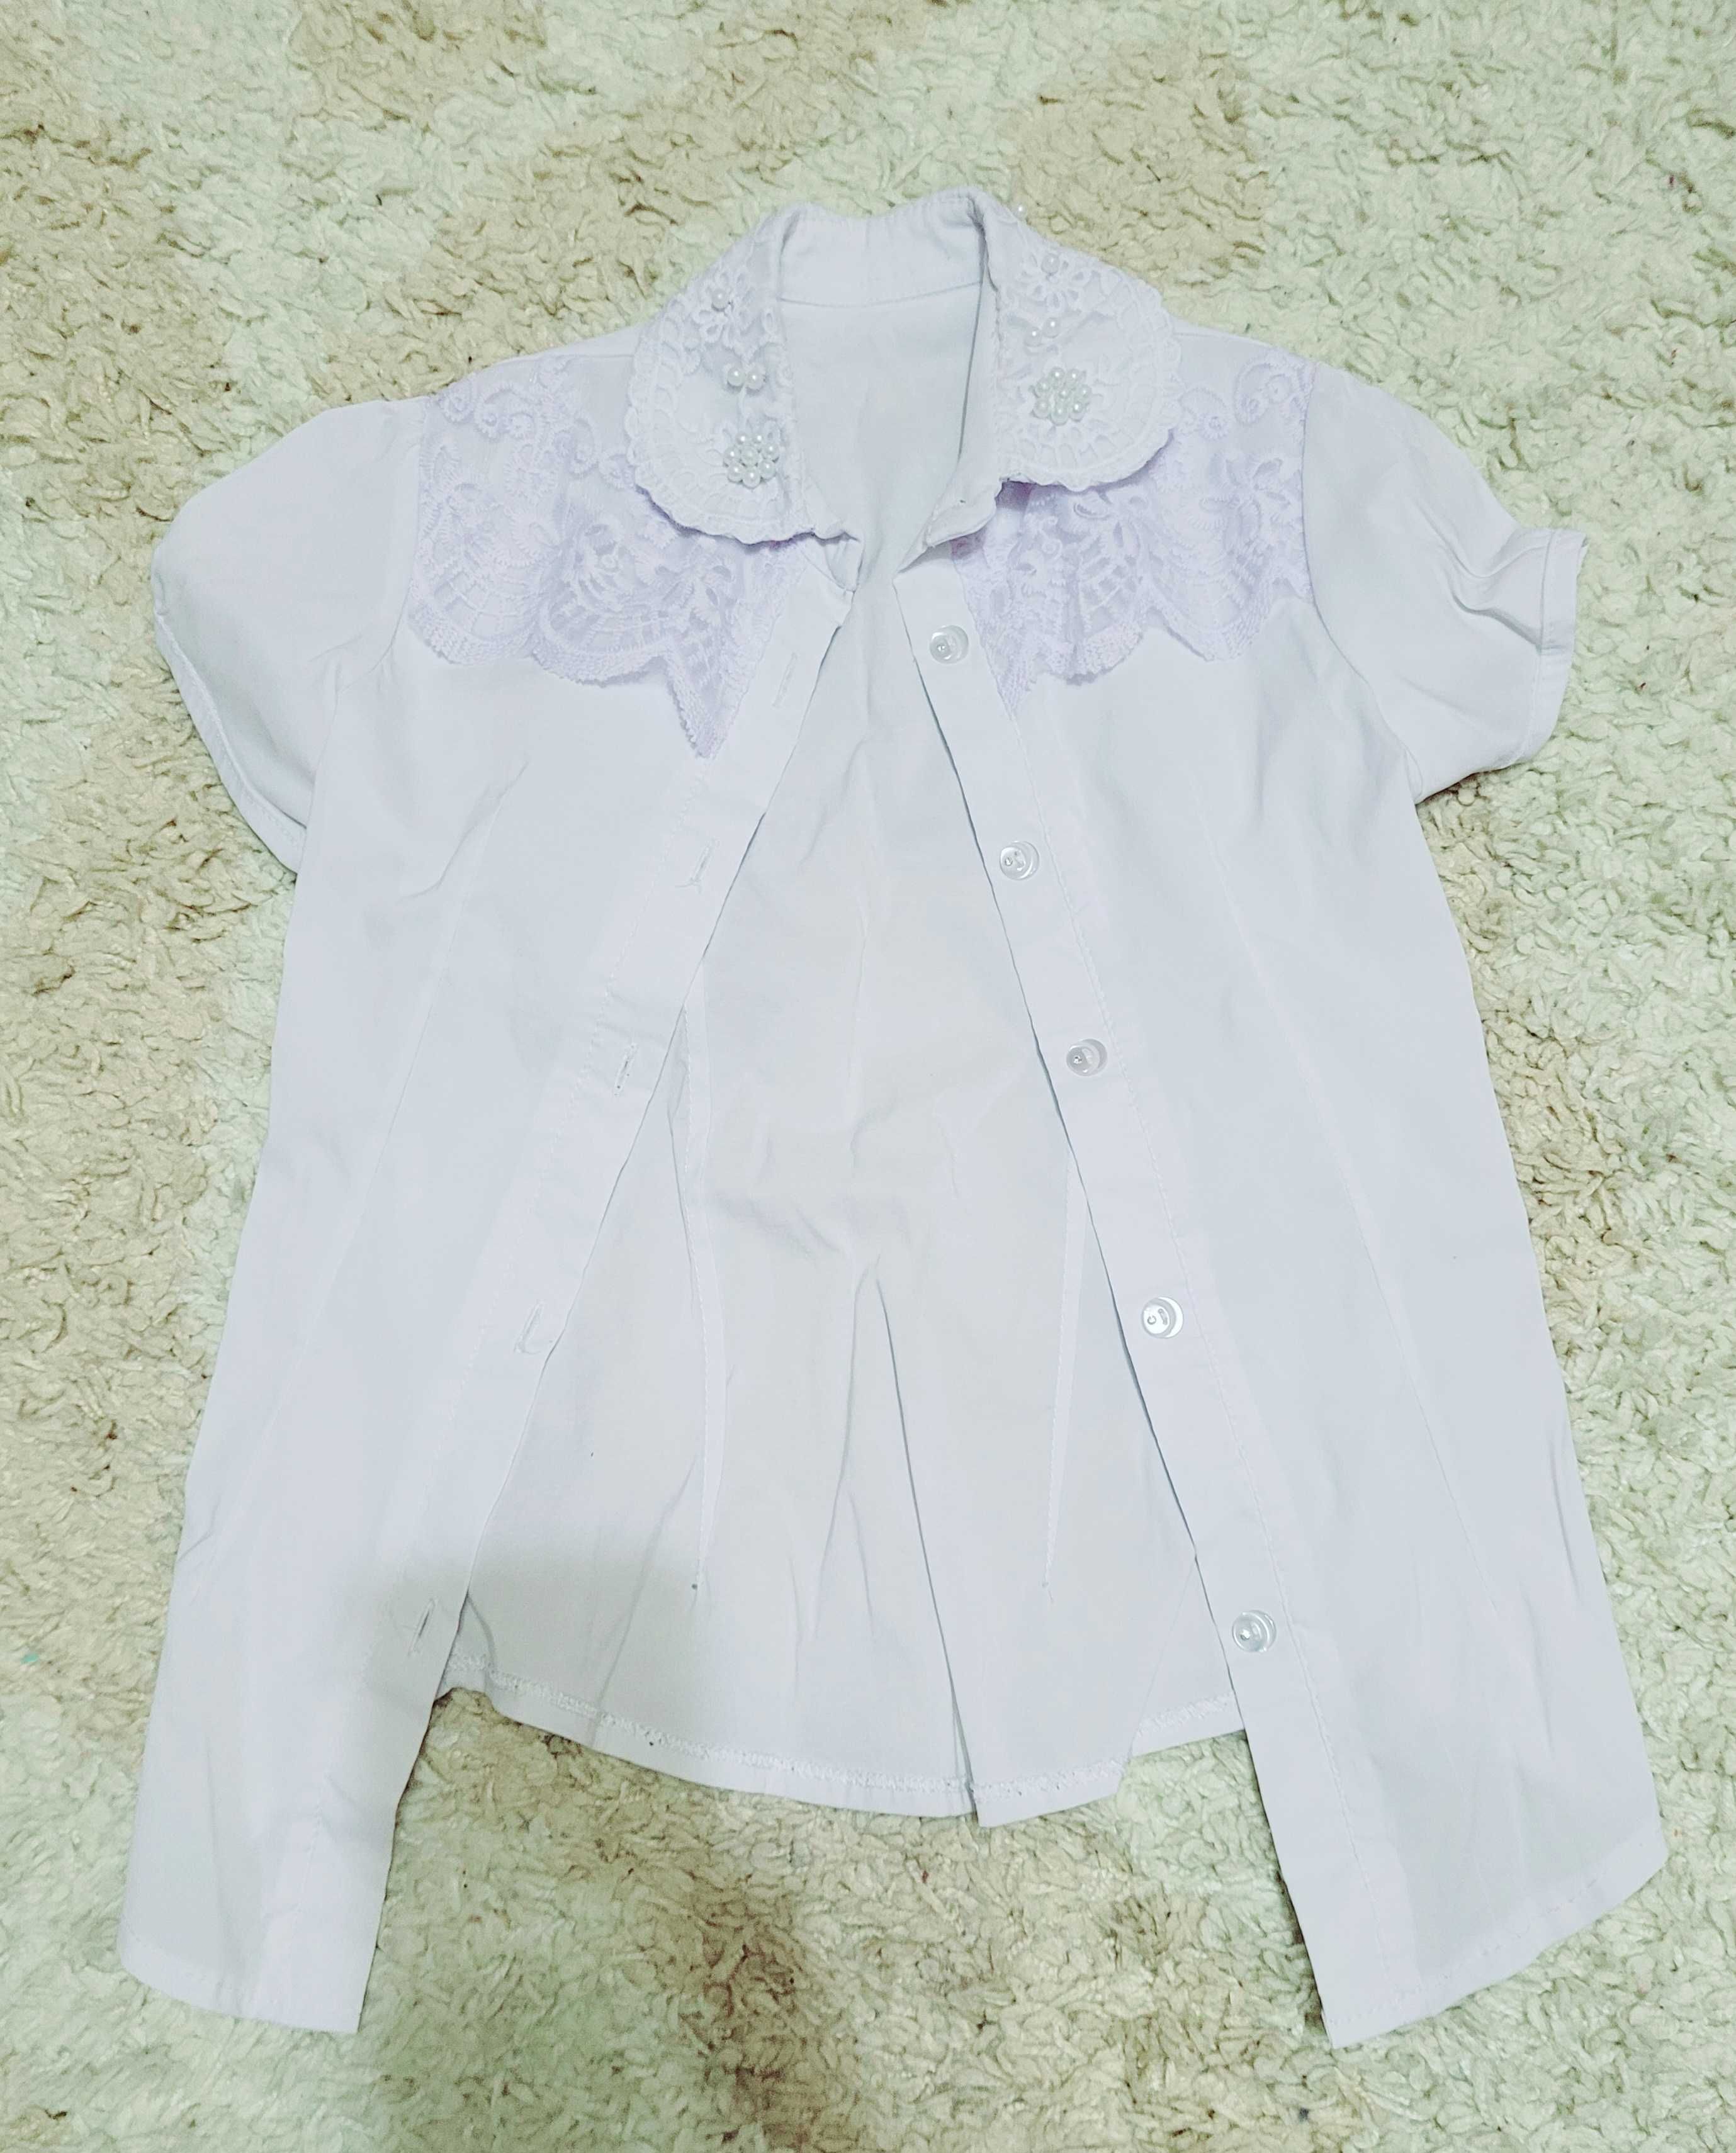 Комплект для школы/пиджак, юбка, жилет+блузка в подарок